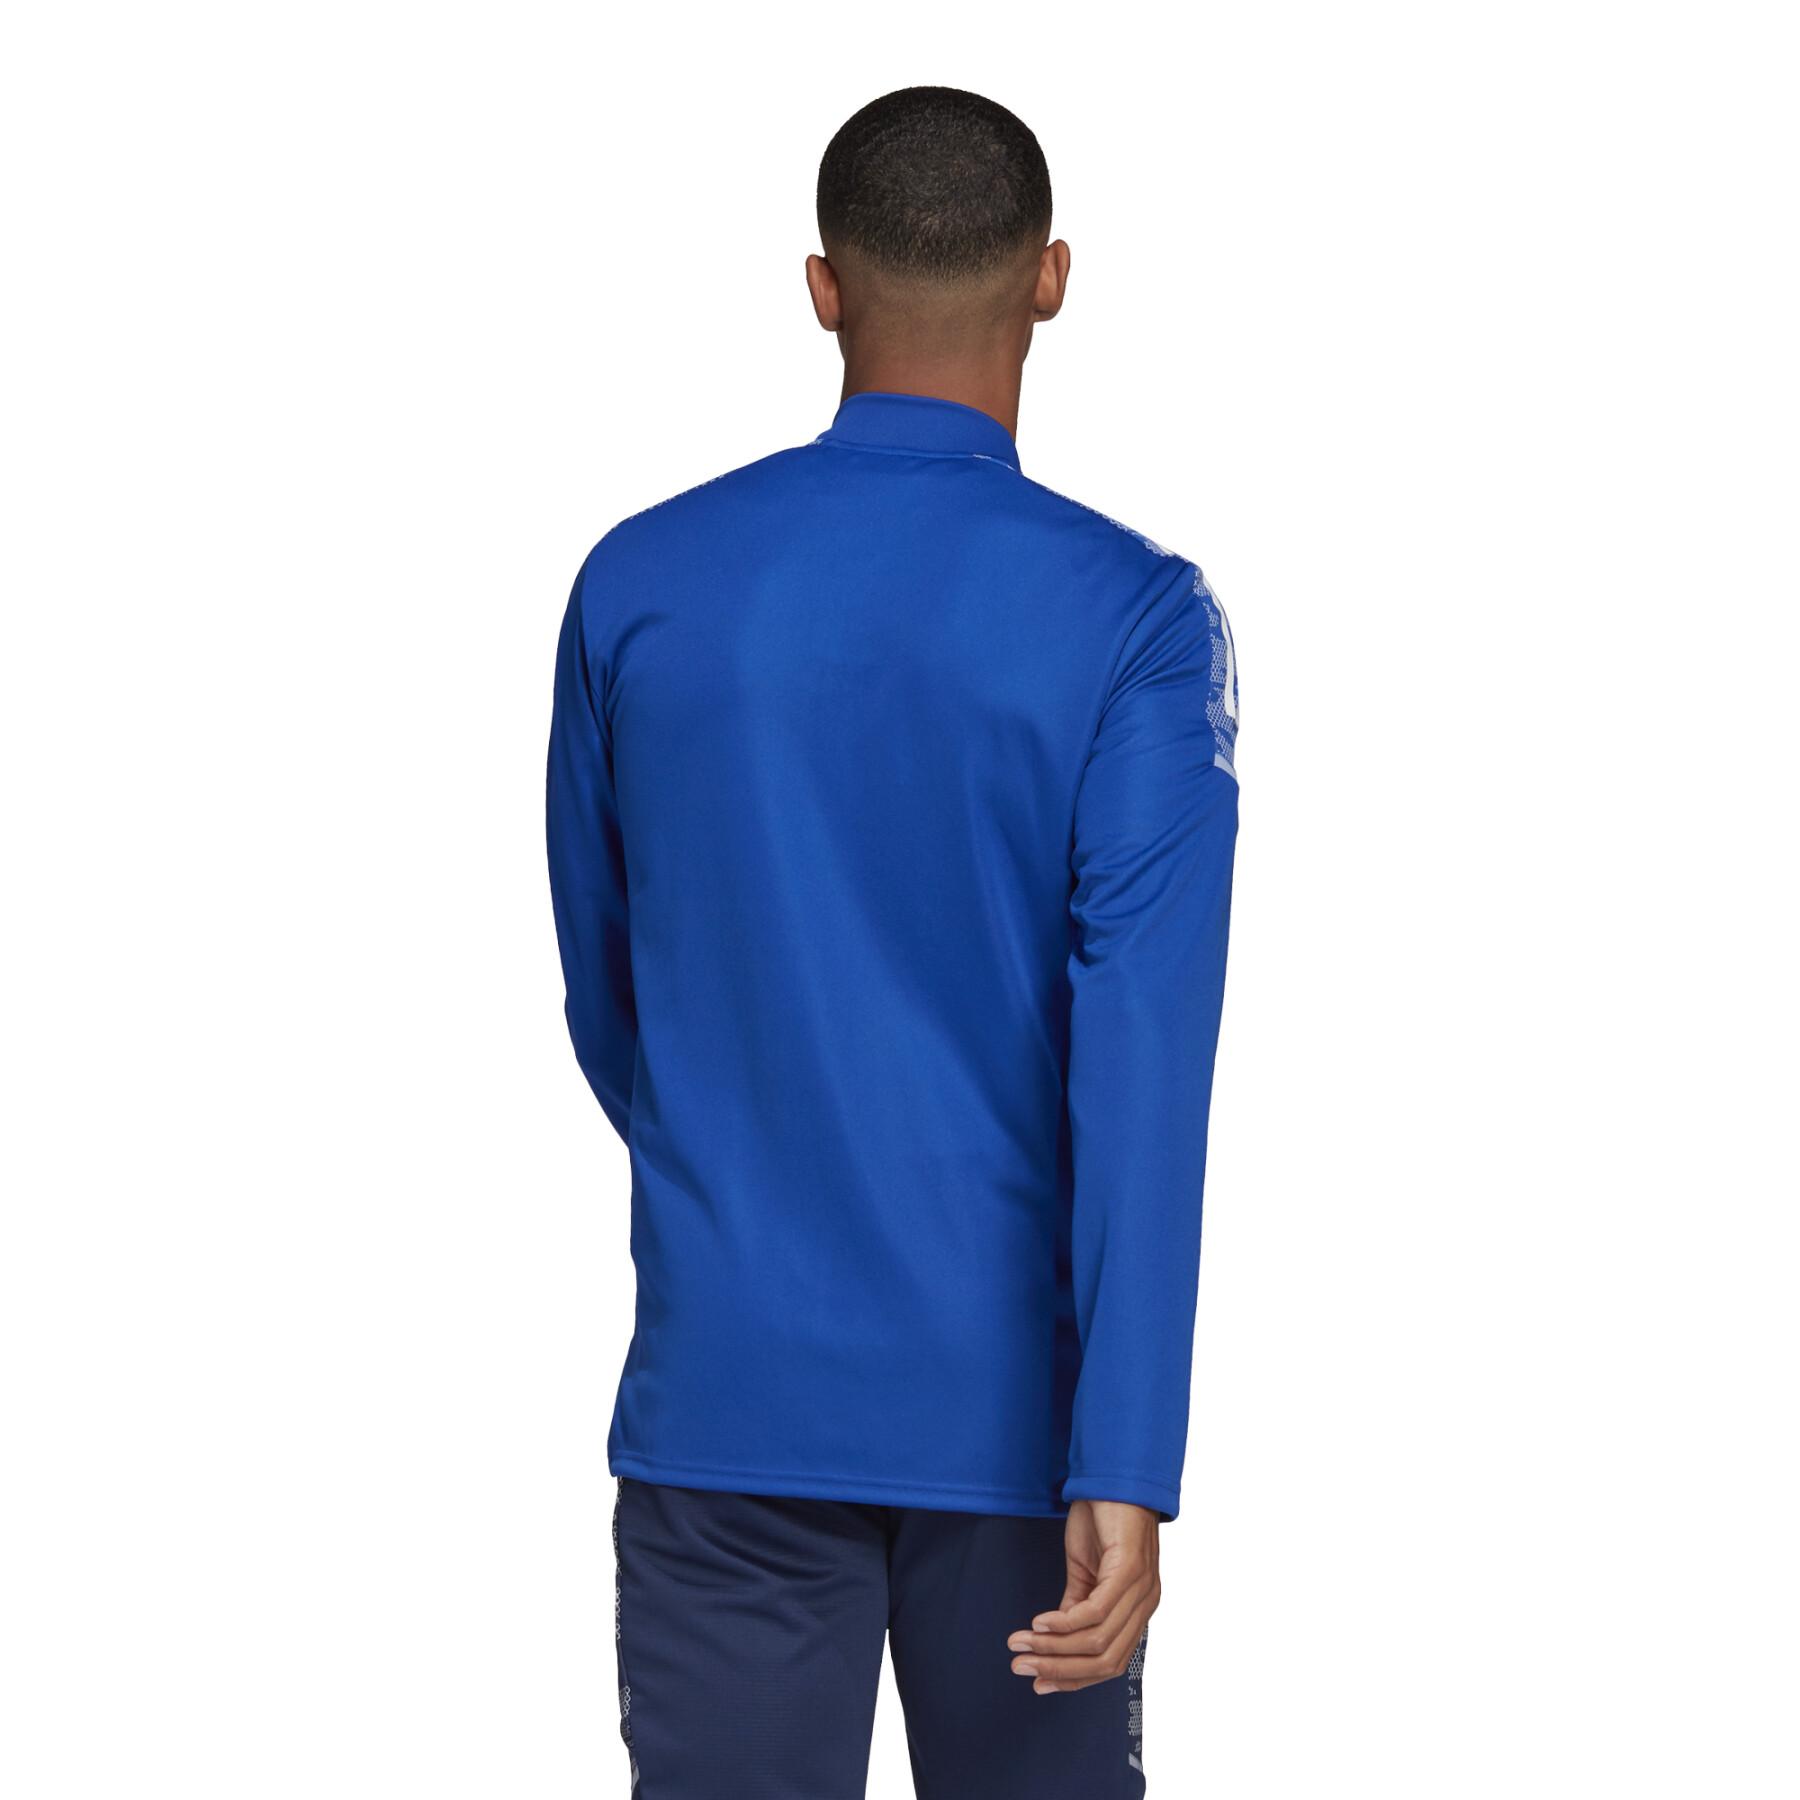 Олимпийка мужская Adidas GH7129 синяя M